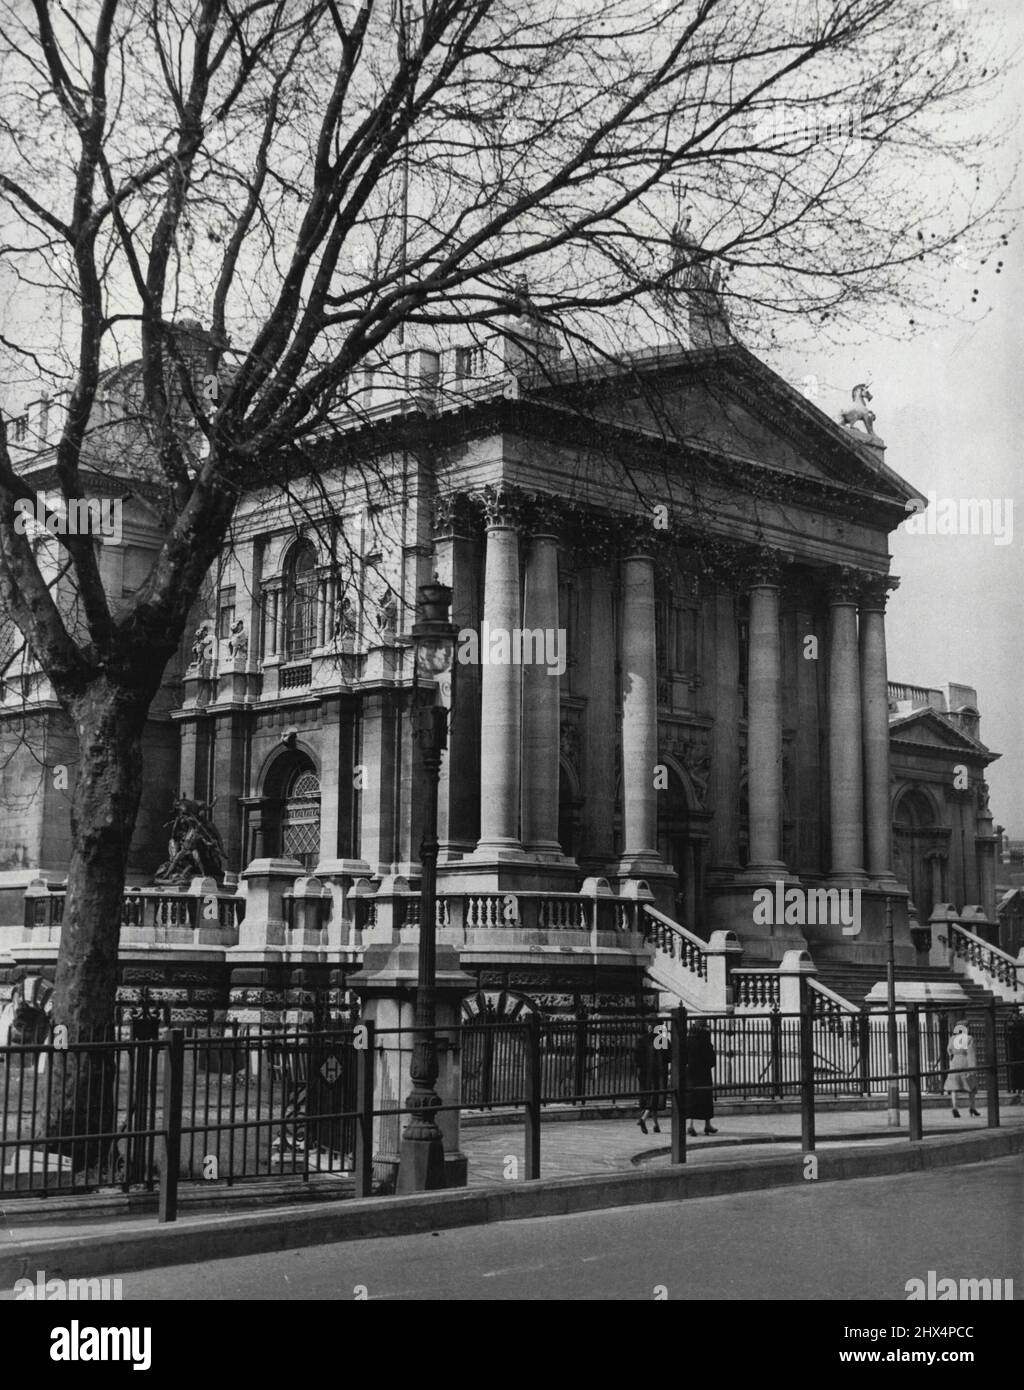 Tate Gallery wird wieder eröffnet -- Nachdem sie während des Krieges geschlossen und bombardiert wurde, wurde die London Tate Gallery, die Heimat der nationalen Sammlung britischer Gemälde und Skulpturen sowie einer permanenten Sammlung zeitgenössischer ausländischer Kunst, wieder eröffnet. Ernest Bevin, der Außenminister, führte die offizielle Zeremonie durch und die Galerie war voller Kunstliebhaber. 25. Februar 1954. (Foto von Pictorial Press). Stockfoto